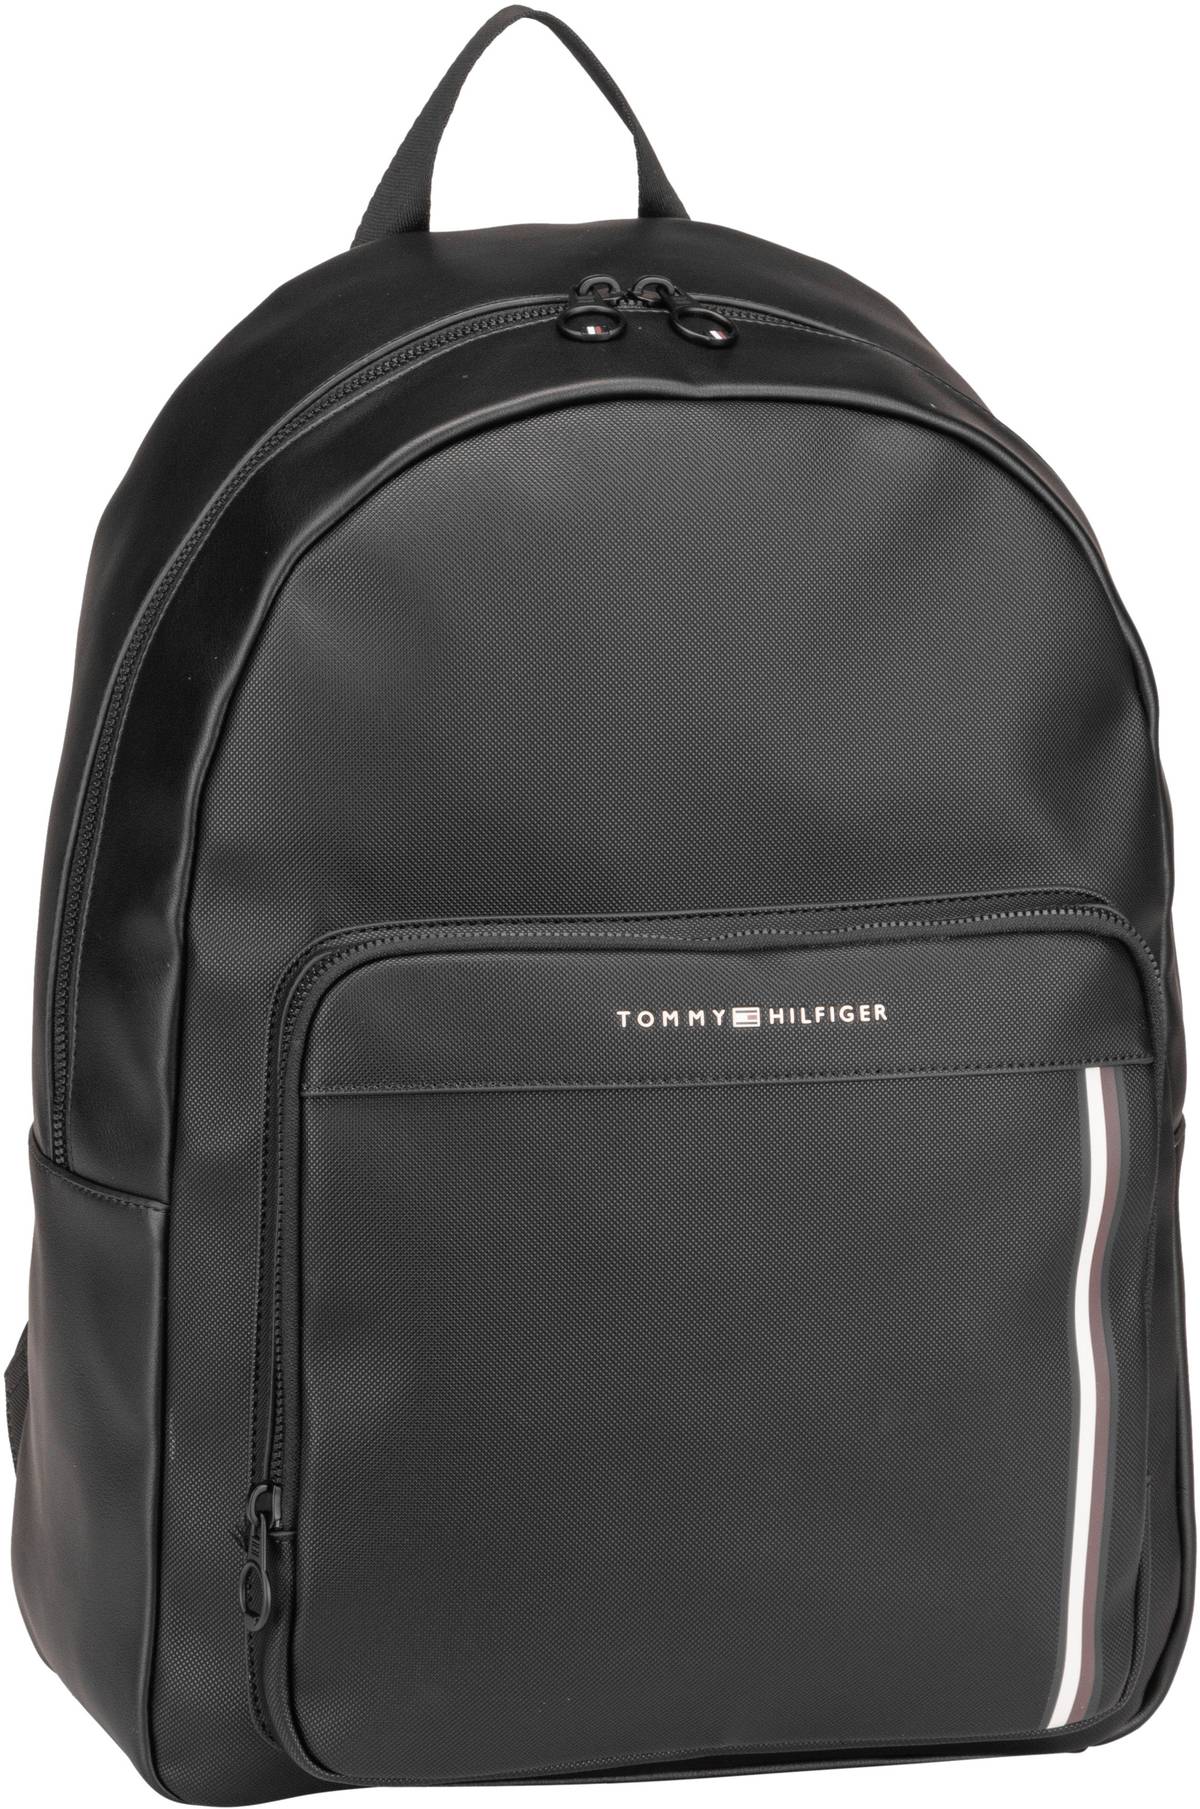 tommy hilfiger -  Rucksack / Daypack TH Pique PU Backpack PF23 Black (20.9 Liter)